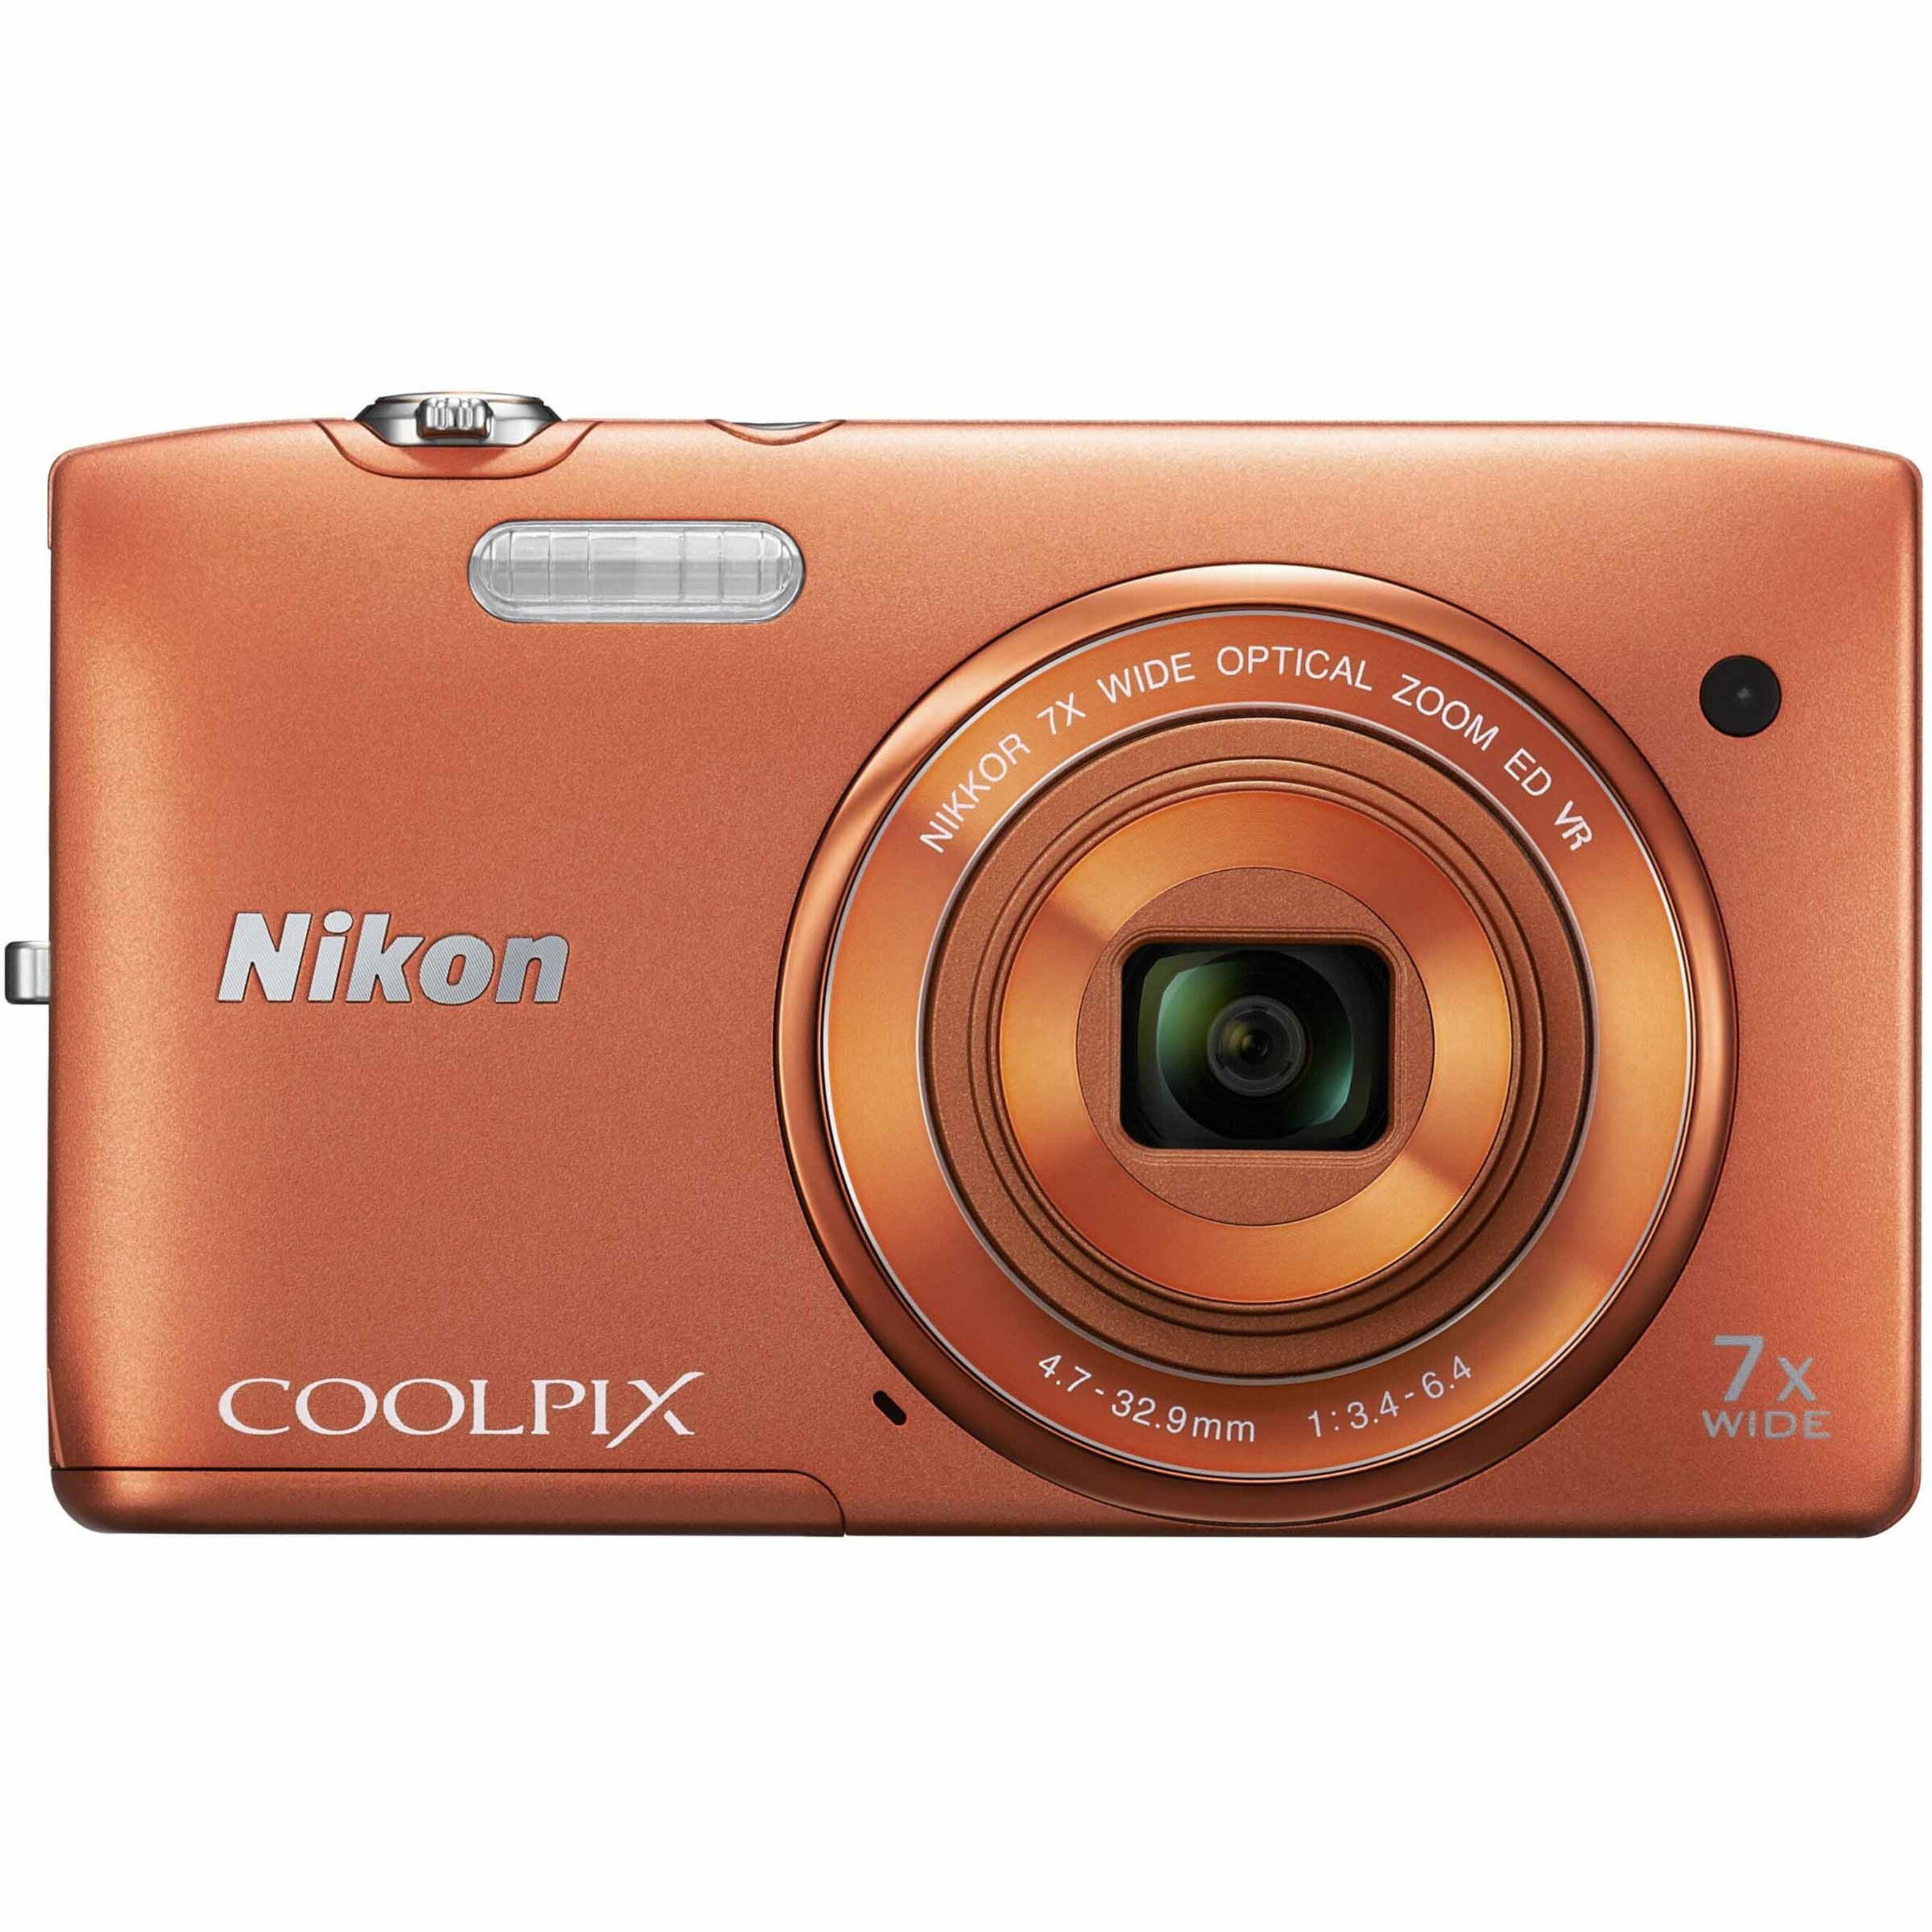 Munching eerlijk buitenspiegel Nikon Coolpix S3500 20.1 Megapixel Compact Camera, Orange - Walmart.com